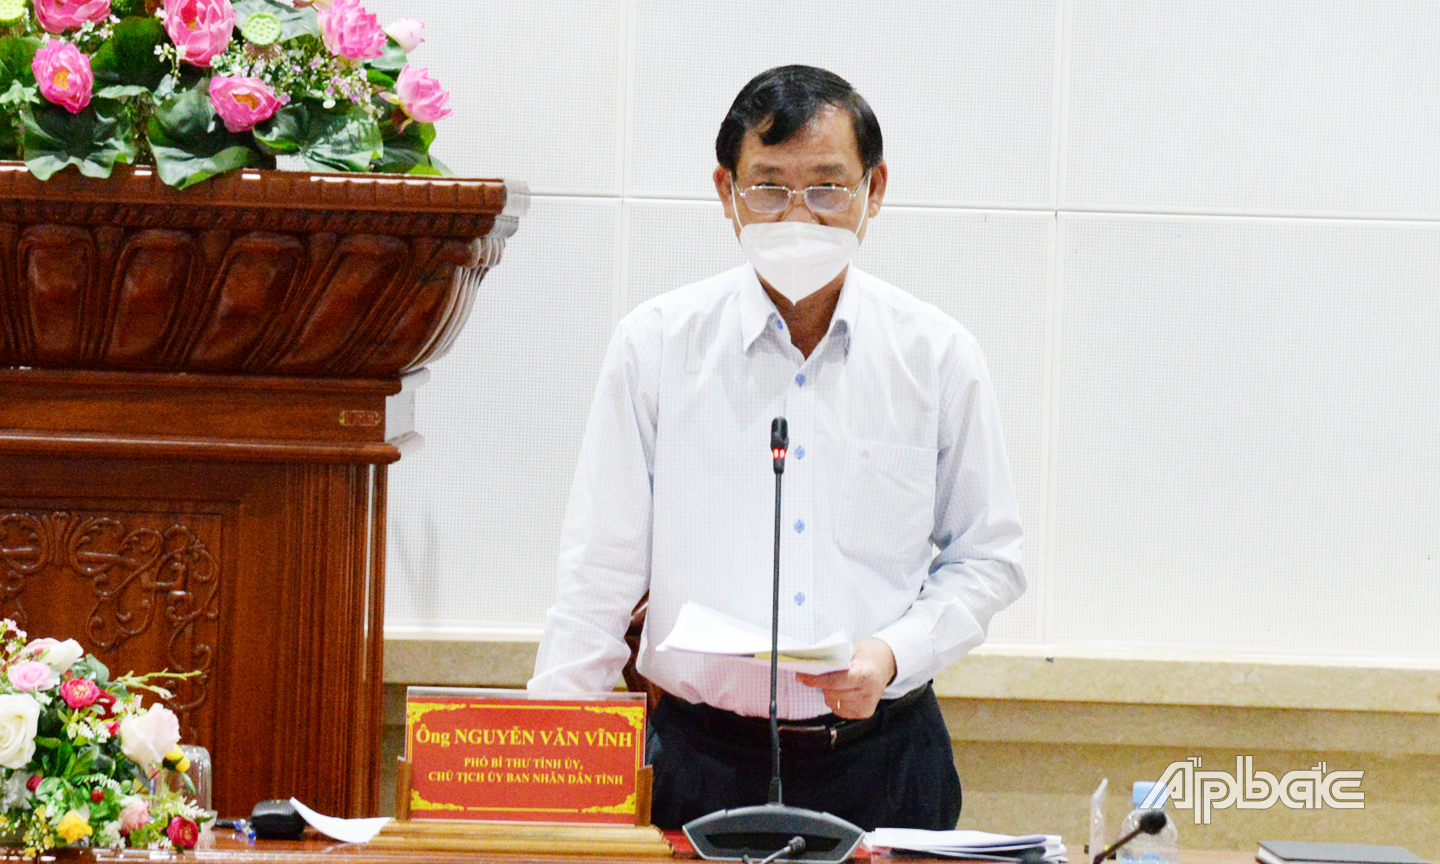 Đồng chí Nguyễn Văn Vĩnh, Chủ tịch UBND tỉnh chỉ đạo các địa phương triển khai thực hiện nhiệm vụ trọng tâm trong những tháng cuối năm 2021. 